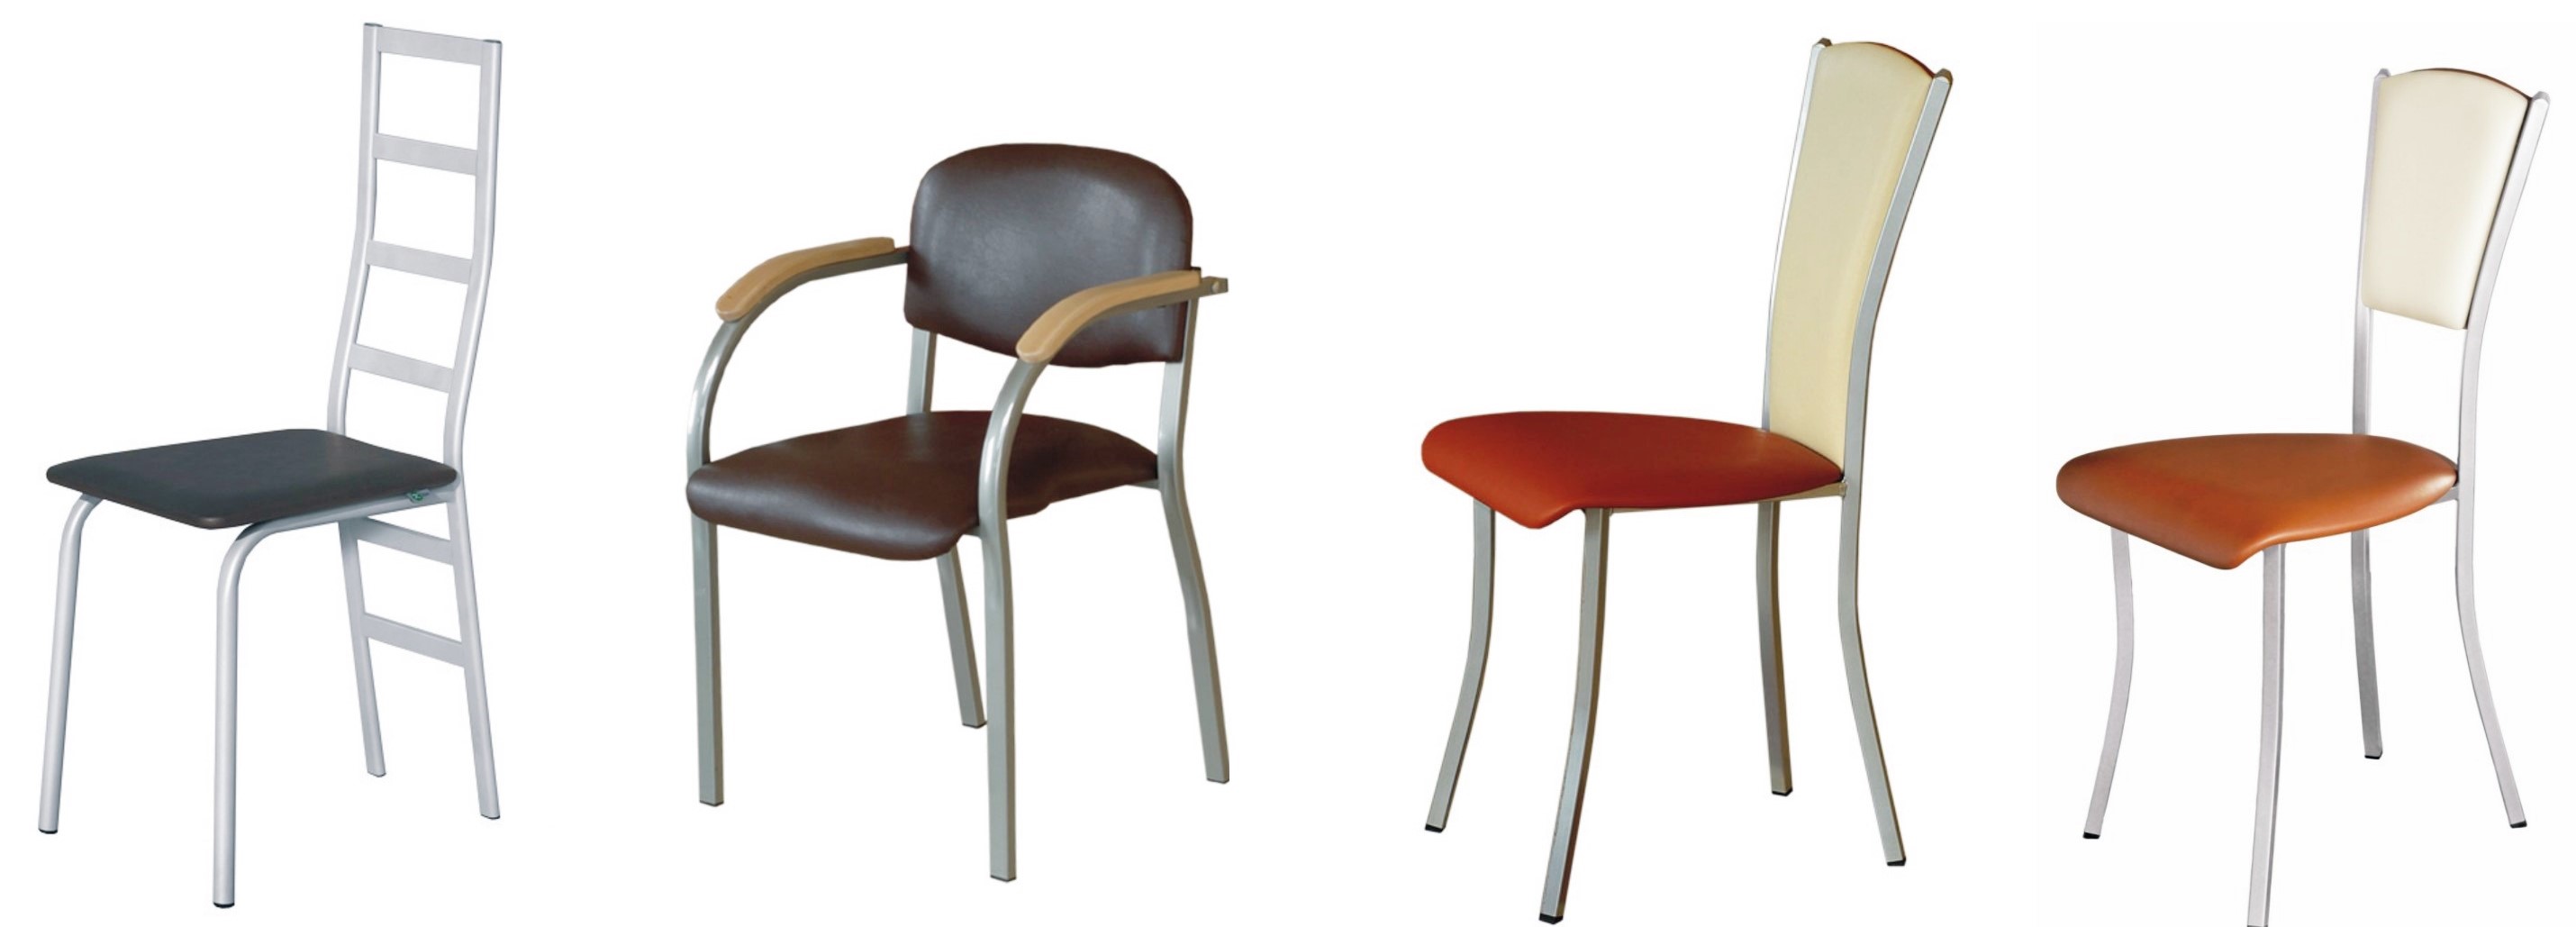 krzesła metalowe do kawiarni KI 3